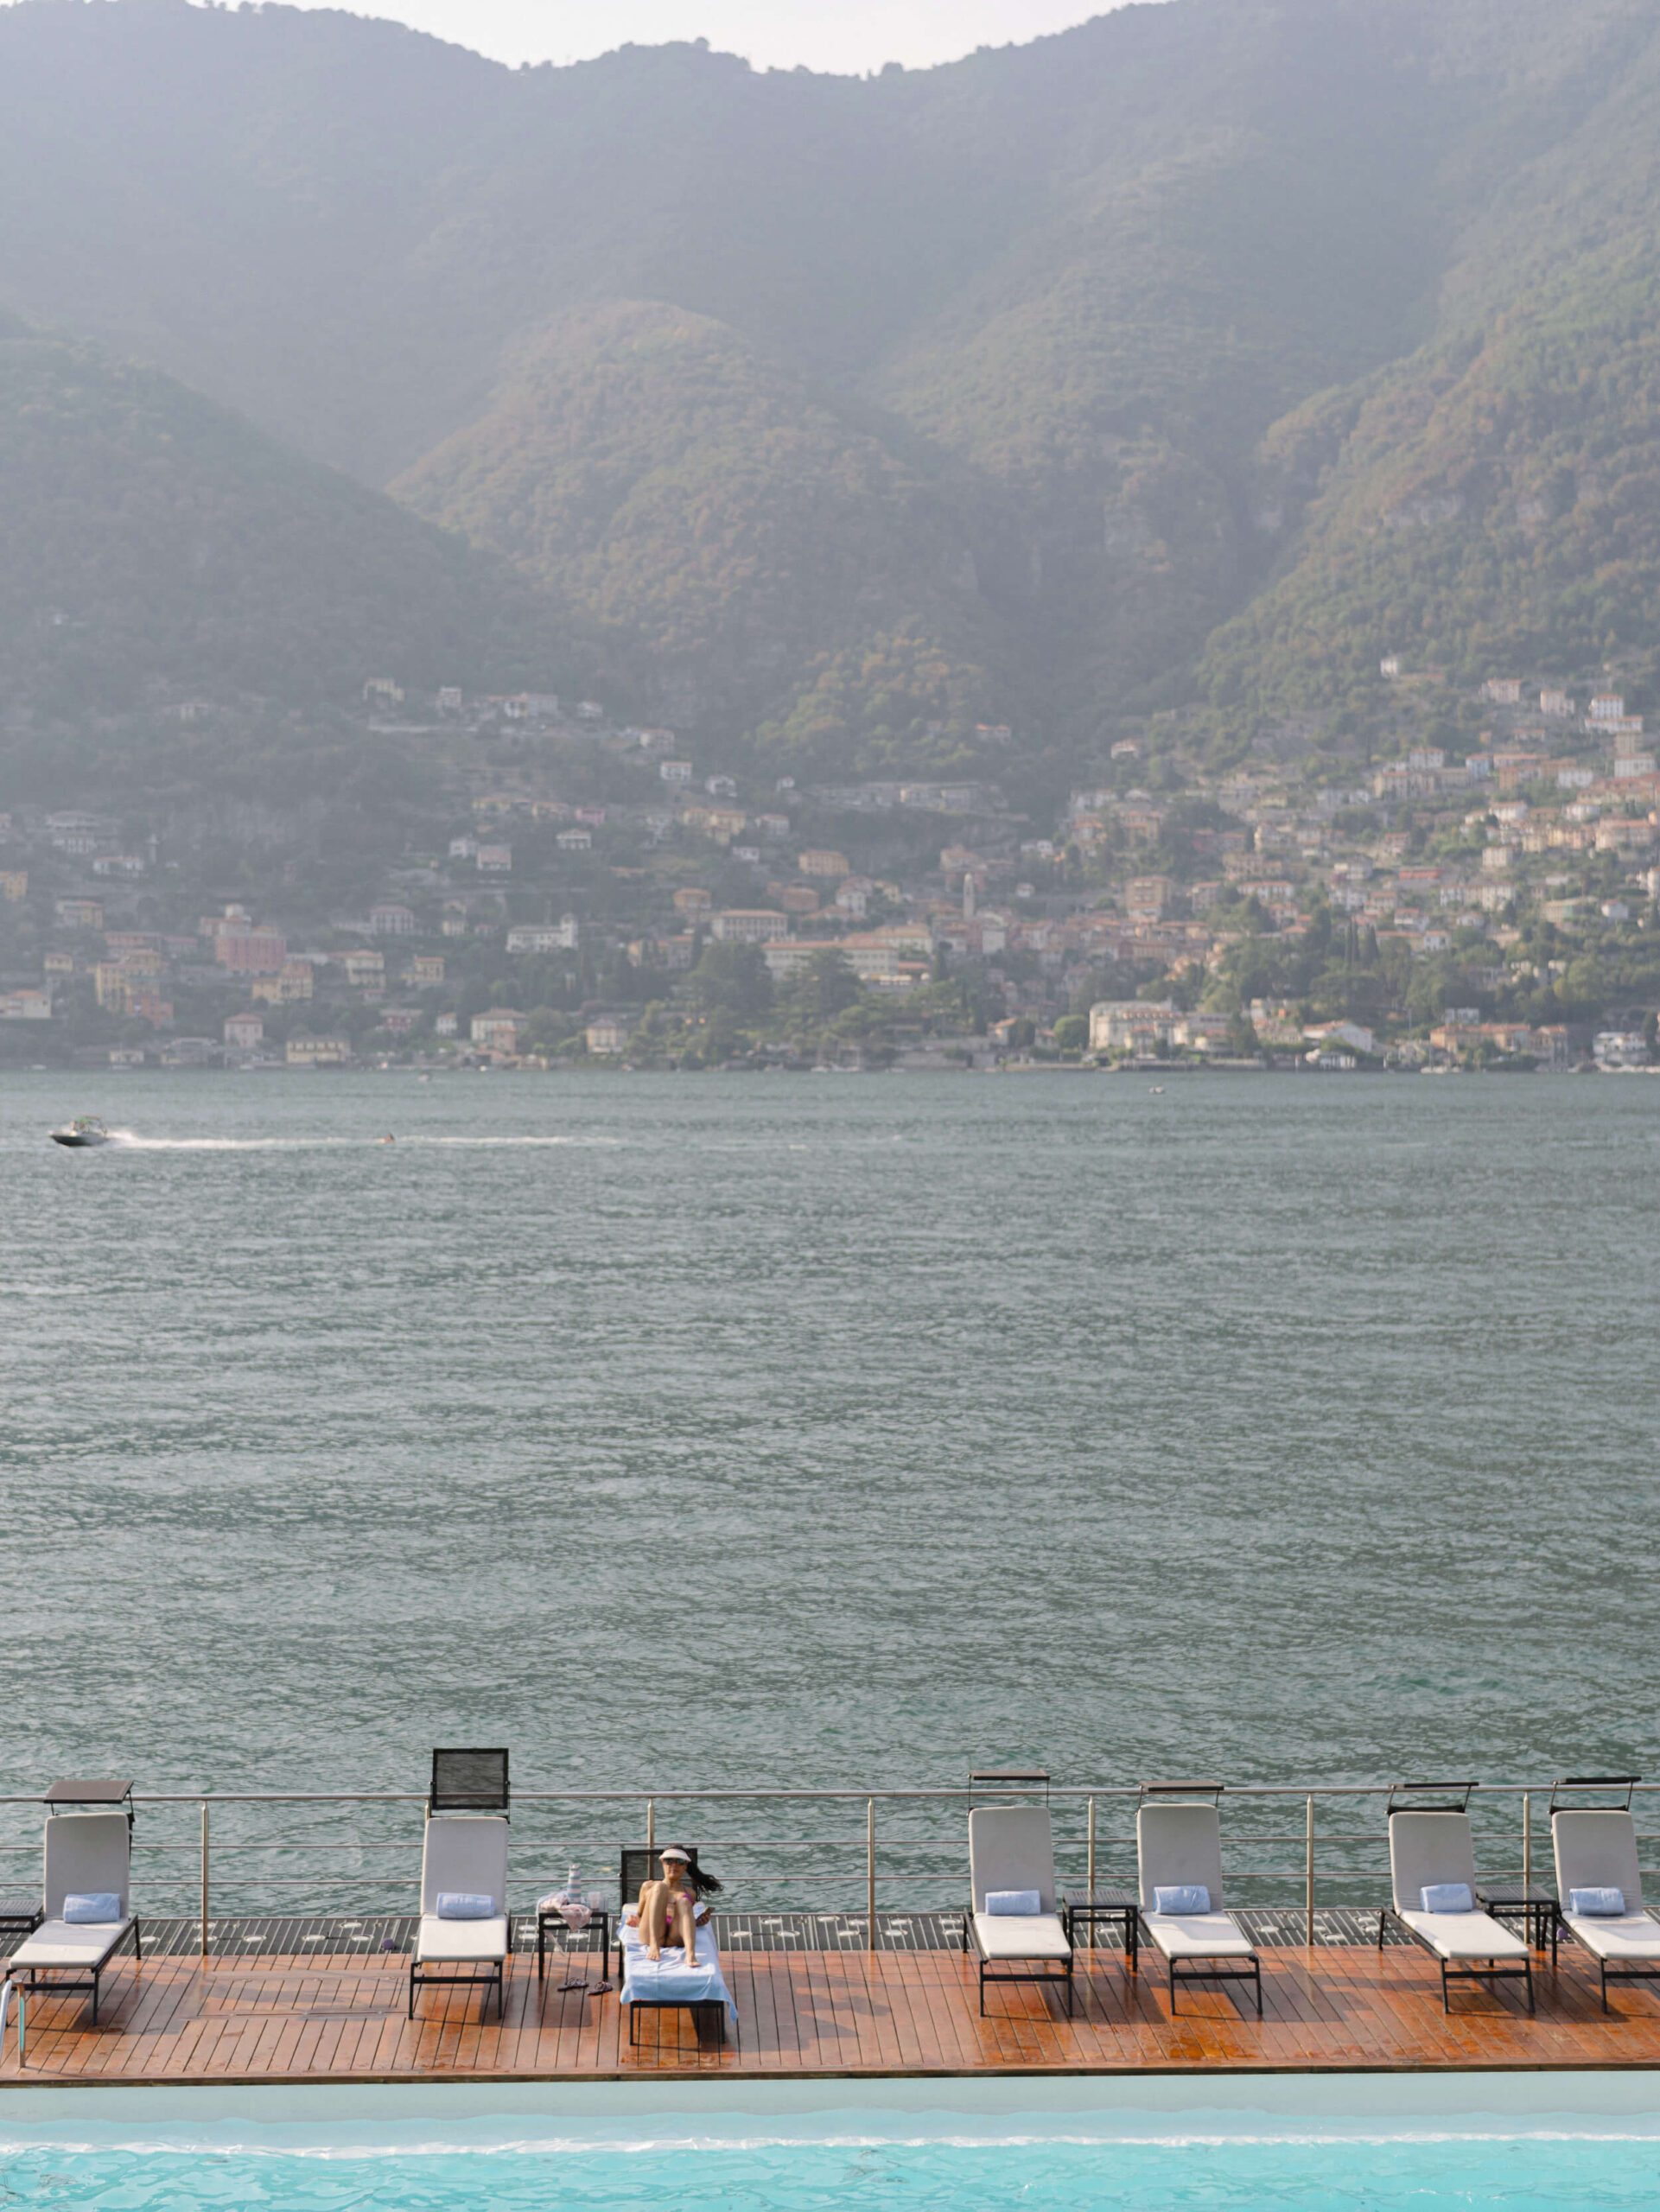 A pool on Lake Como